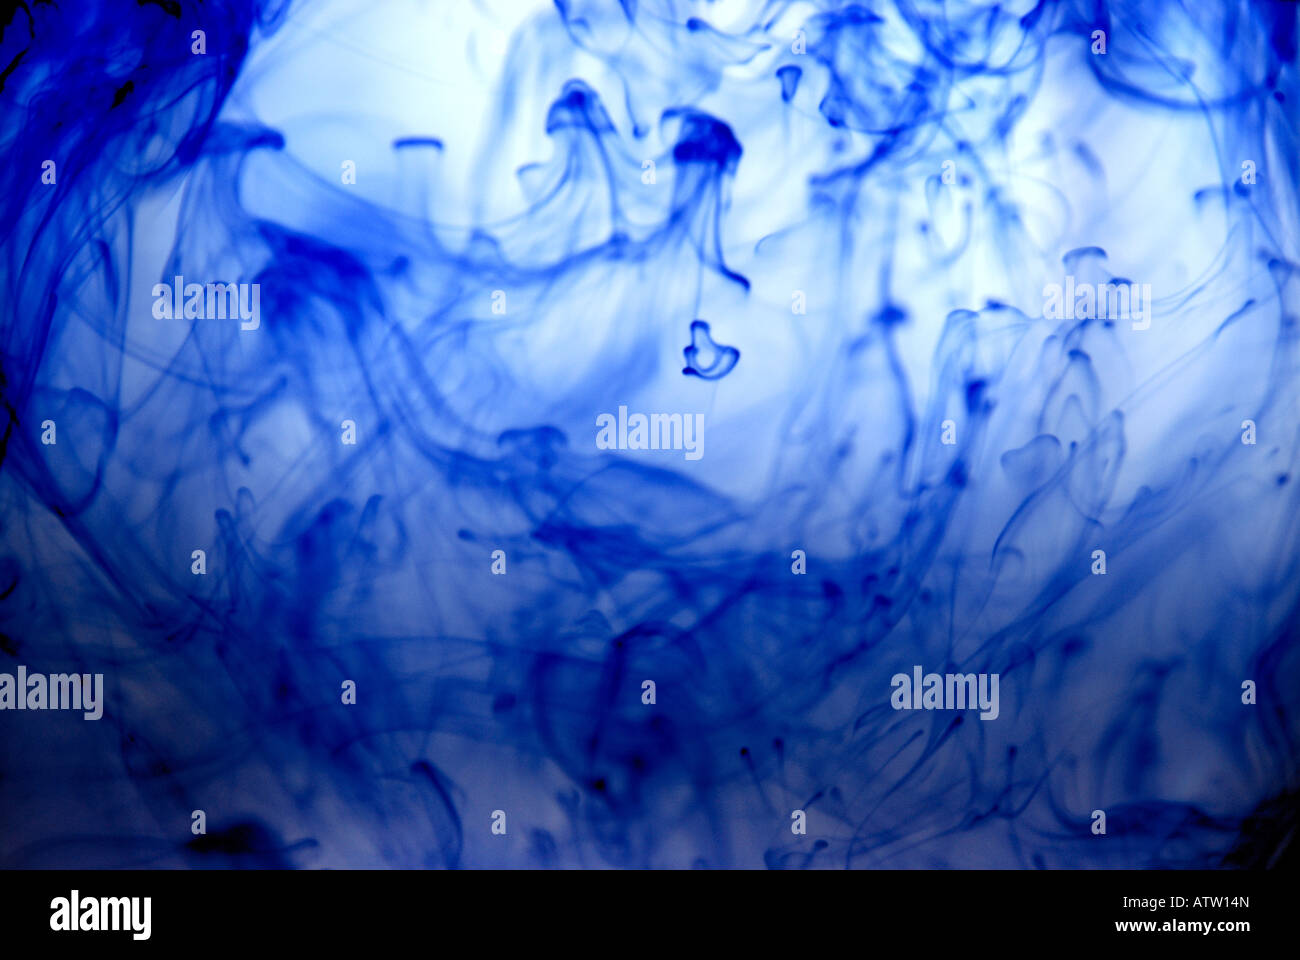 Inchiostro blu riccioli volute caos abstract incenso onde colorate colore haze correnti di aria sfondi indigo turbolenza della corrente di vento Foto Stock